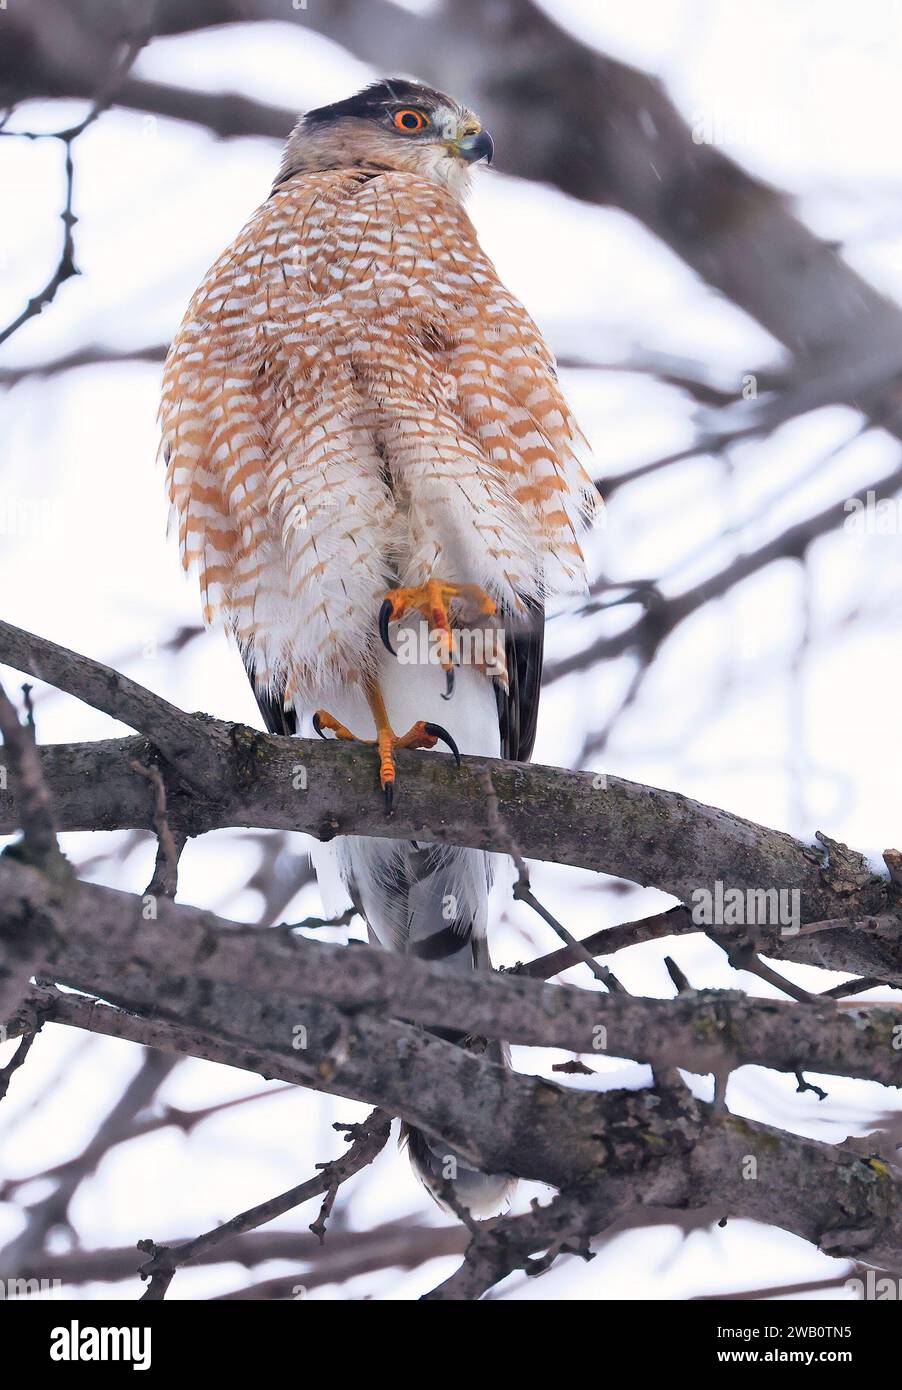 Le faucon de Cooper perché sur une branche d'arbre, Québec, Canada Banque D'Images